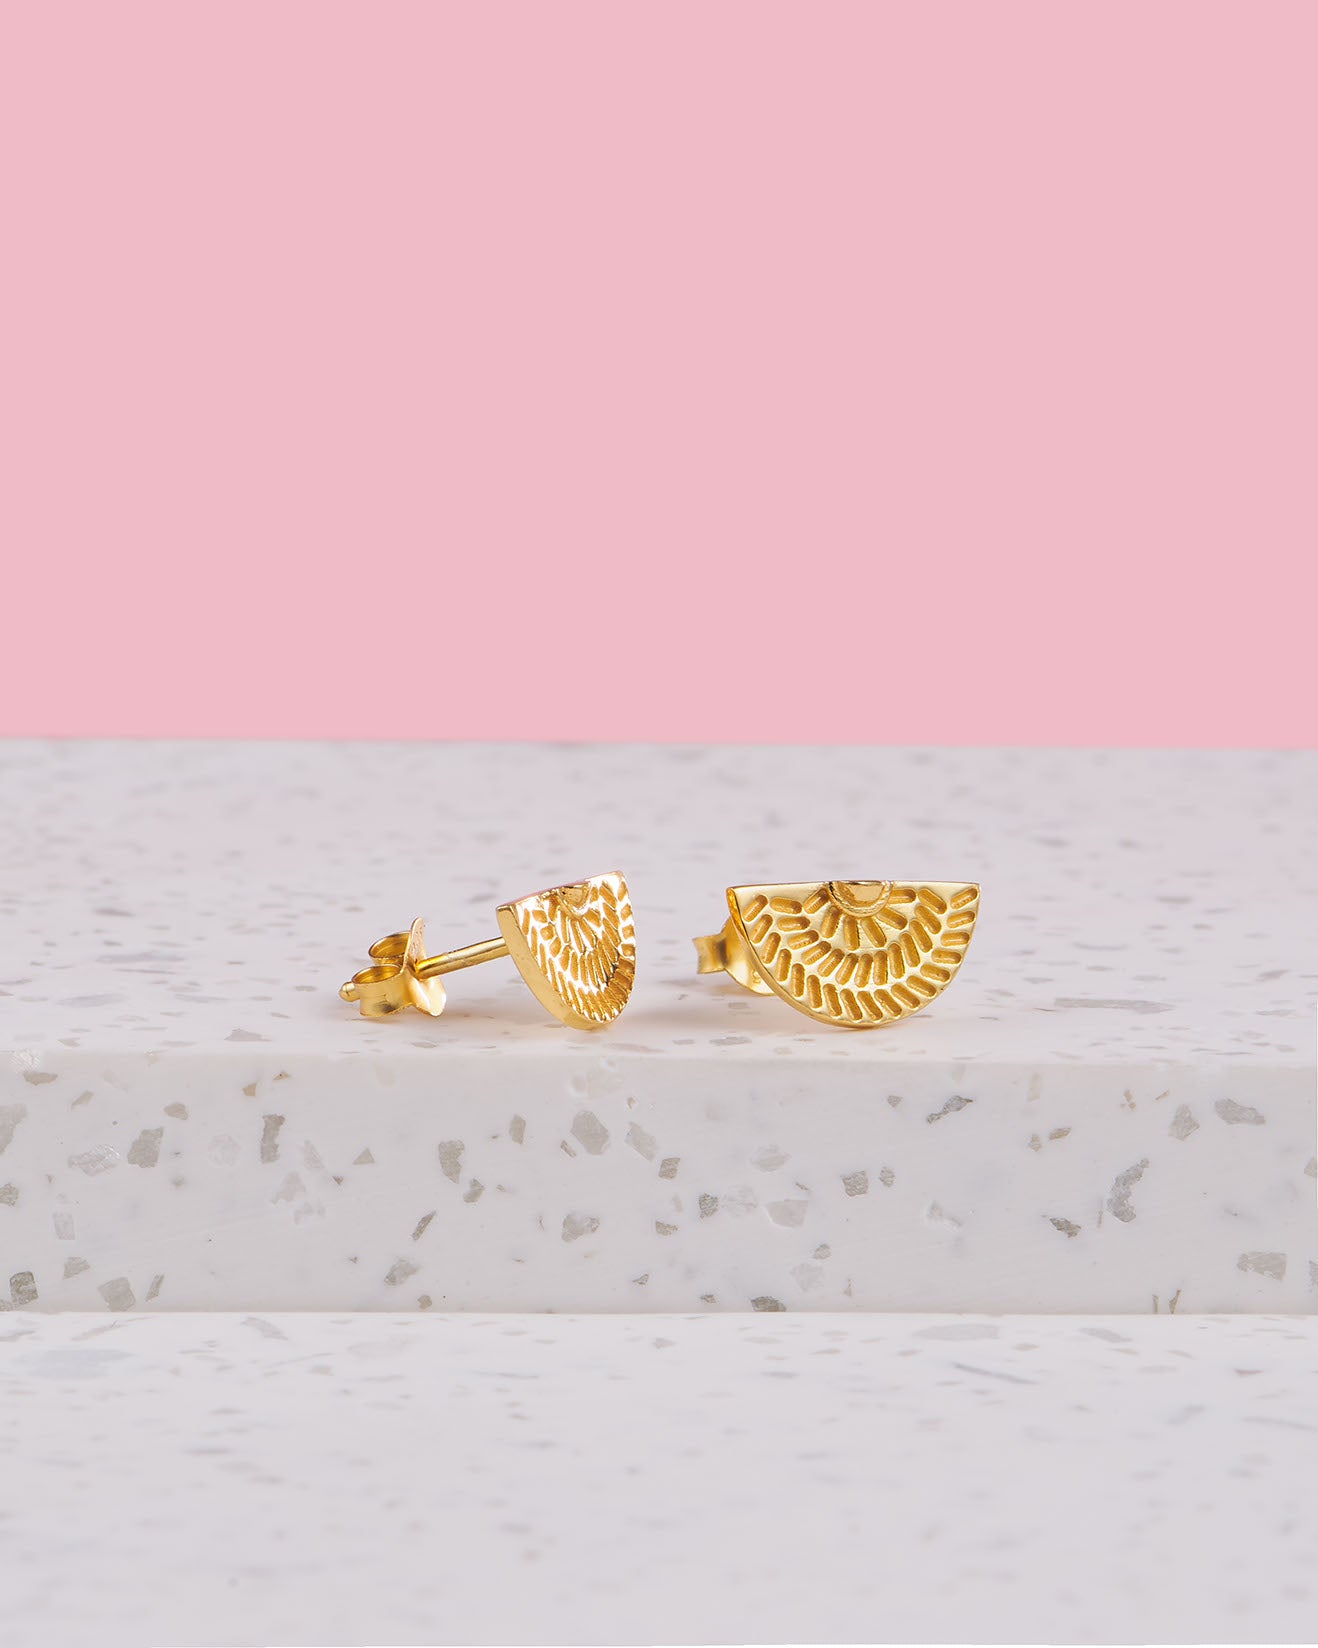 Handgemachte Ohrringe aus Bali | Geschenk mit Bedeutung für Freundin | Goldene Ohrstecker